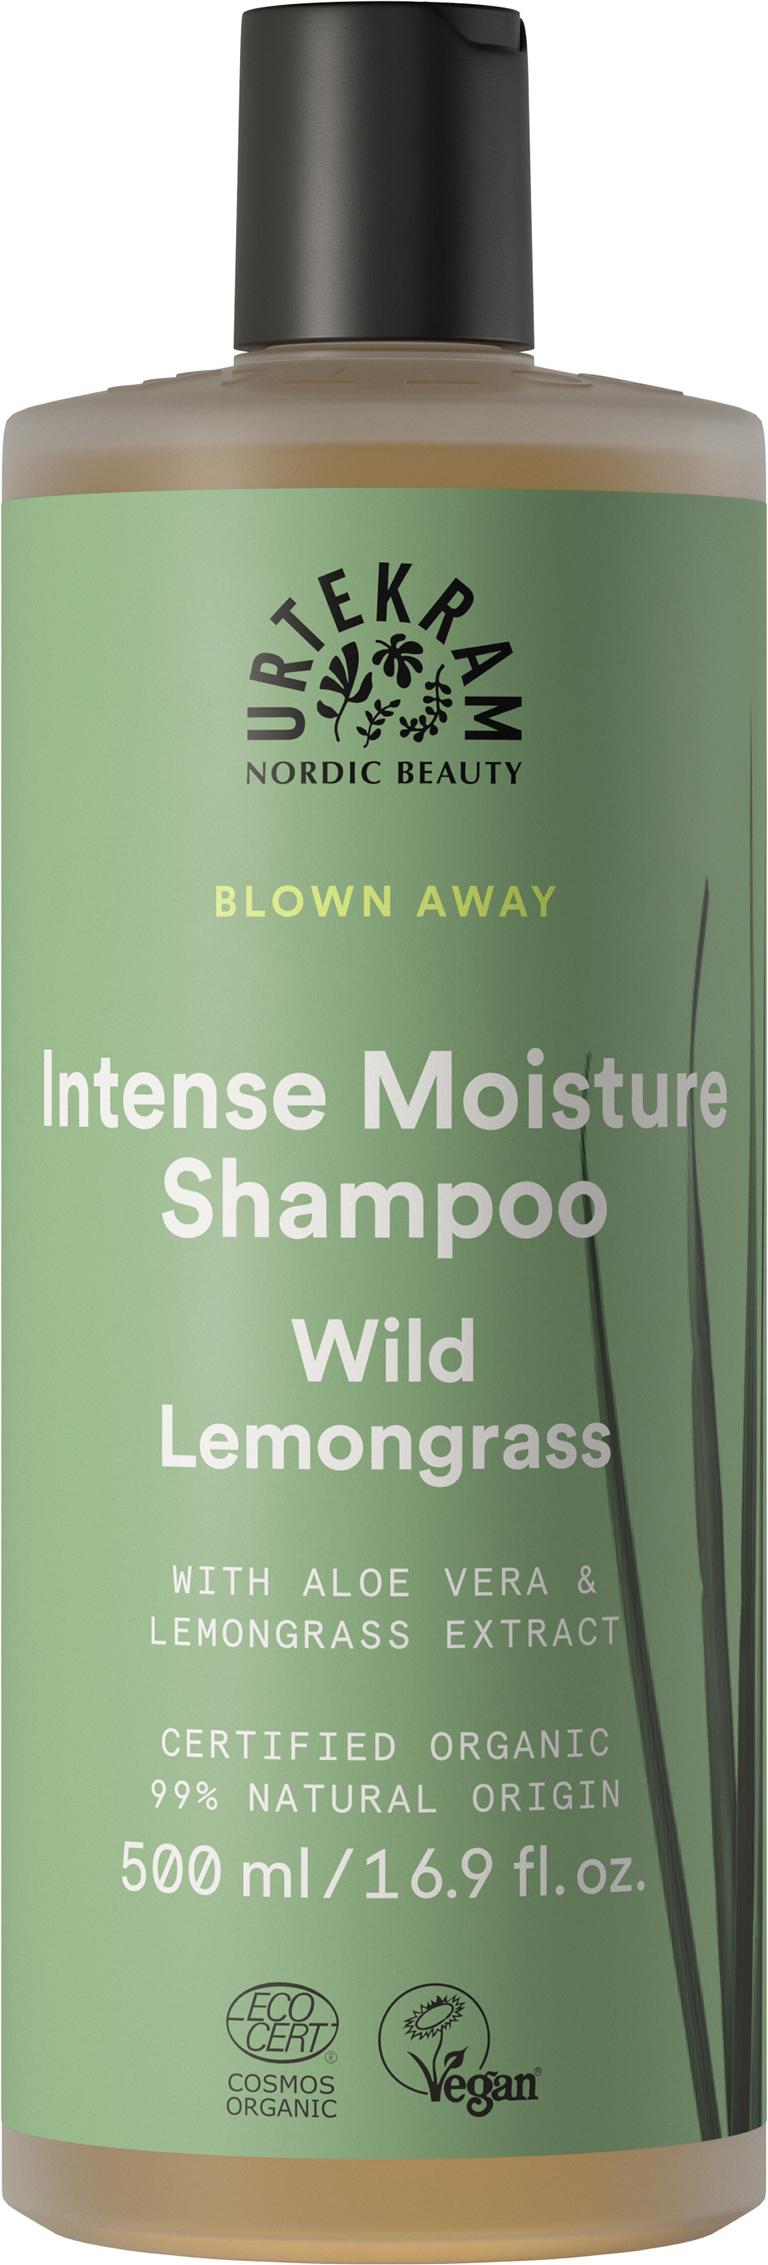 Urtekram Wild Lemongrass Shampoo 500 ml 500 ml